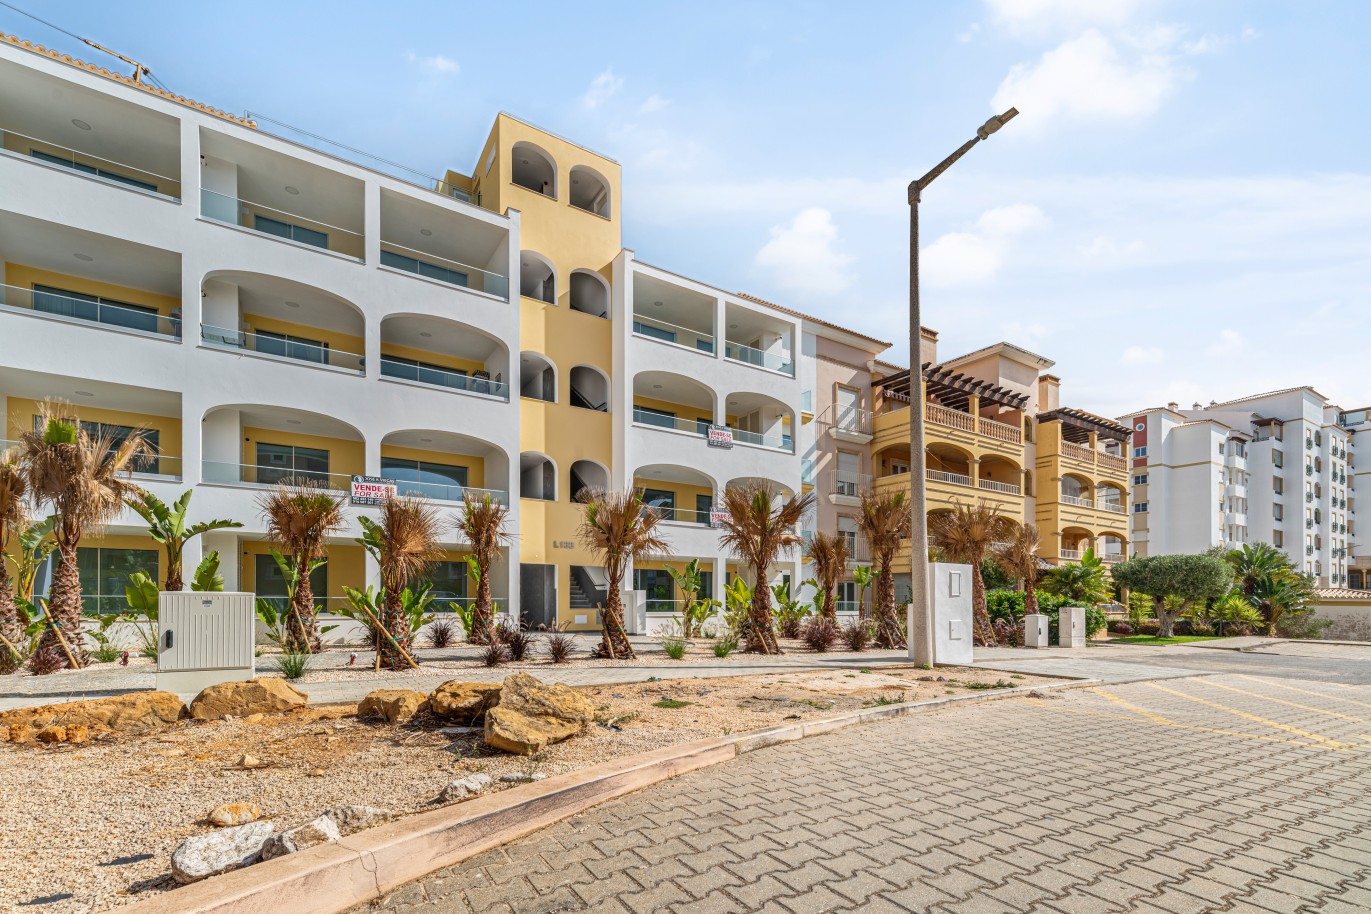 Verkauf einer Wohnung im Bau, mit Terrasse, Lagos, Algarve, Portugal_238457